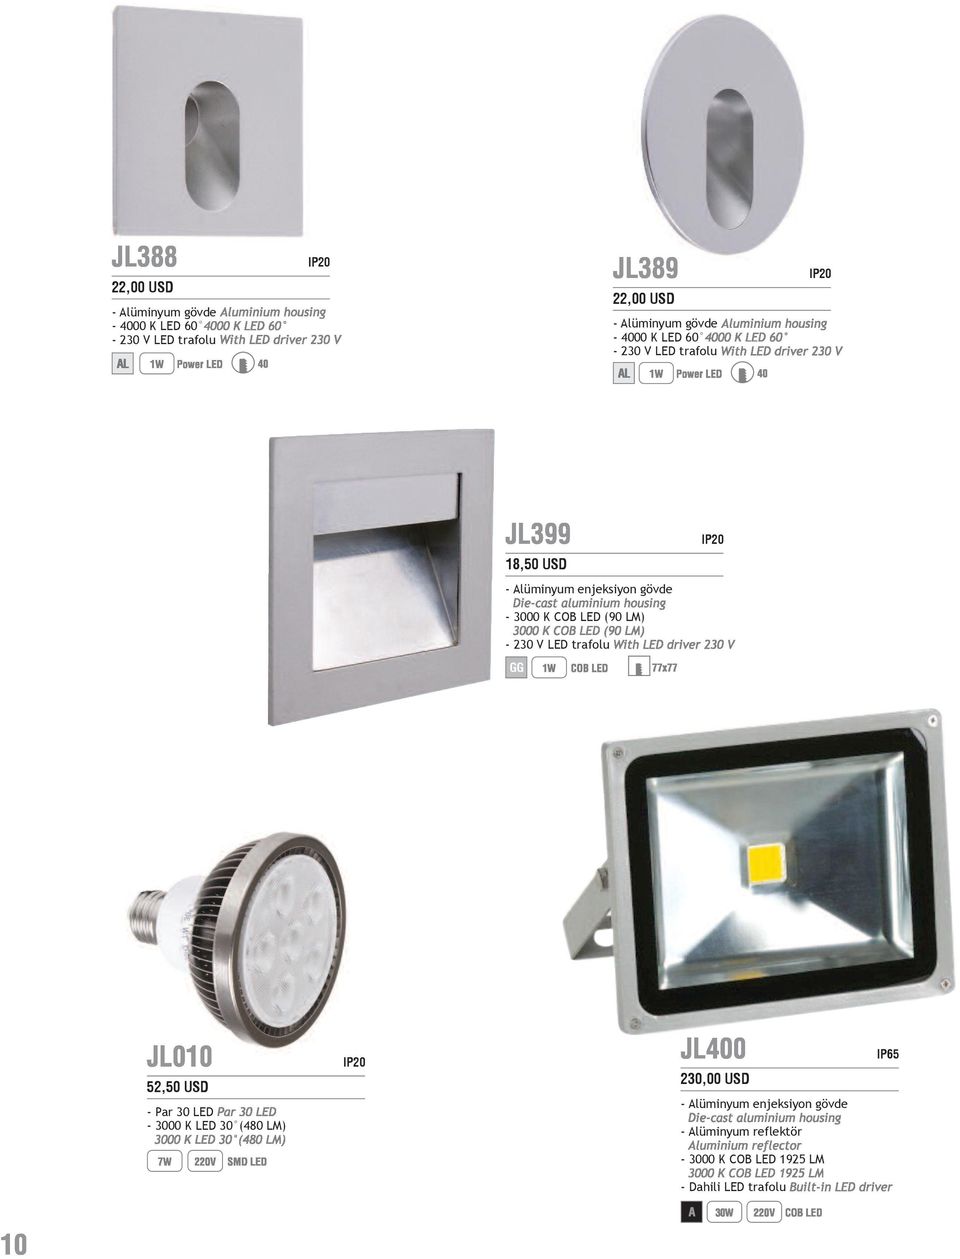 USD - Par 30 LED - 3000 LED 30 (480 LM) 230,00